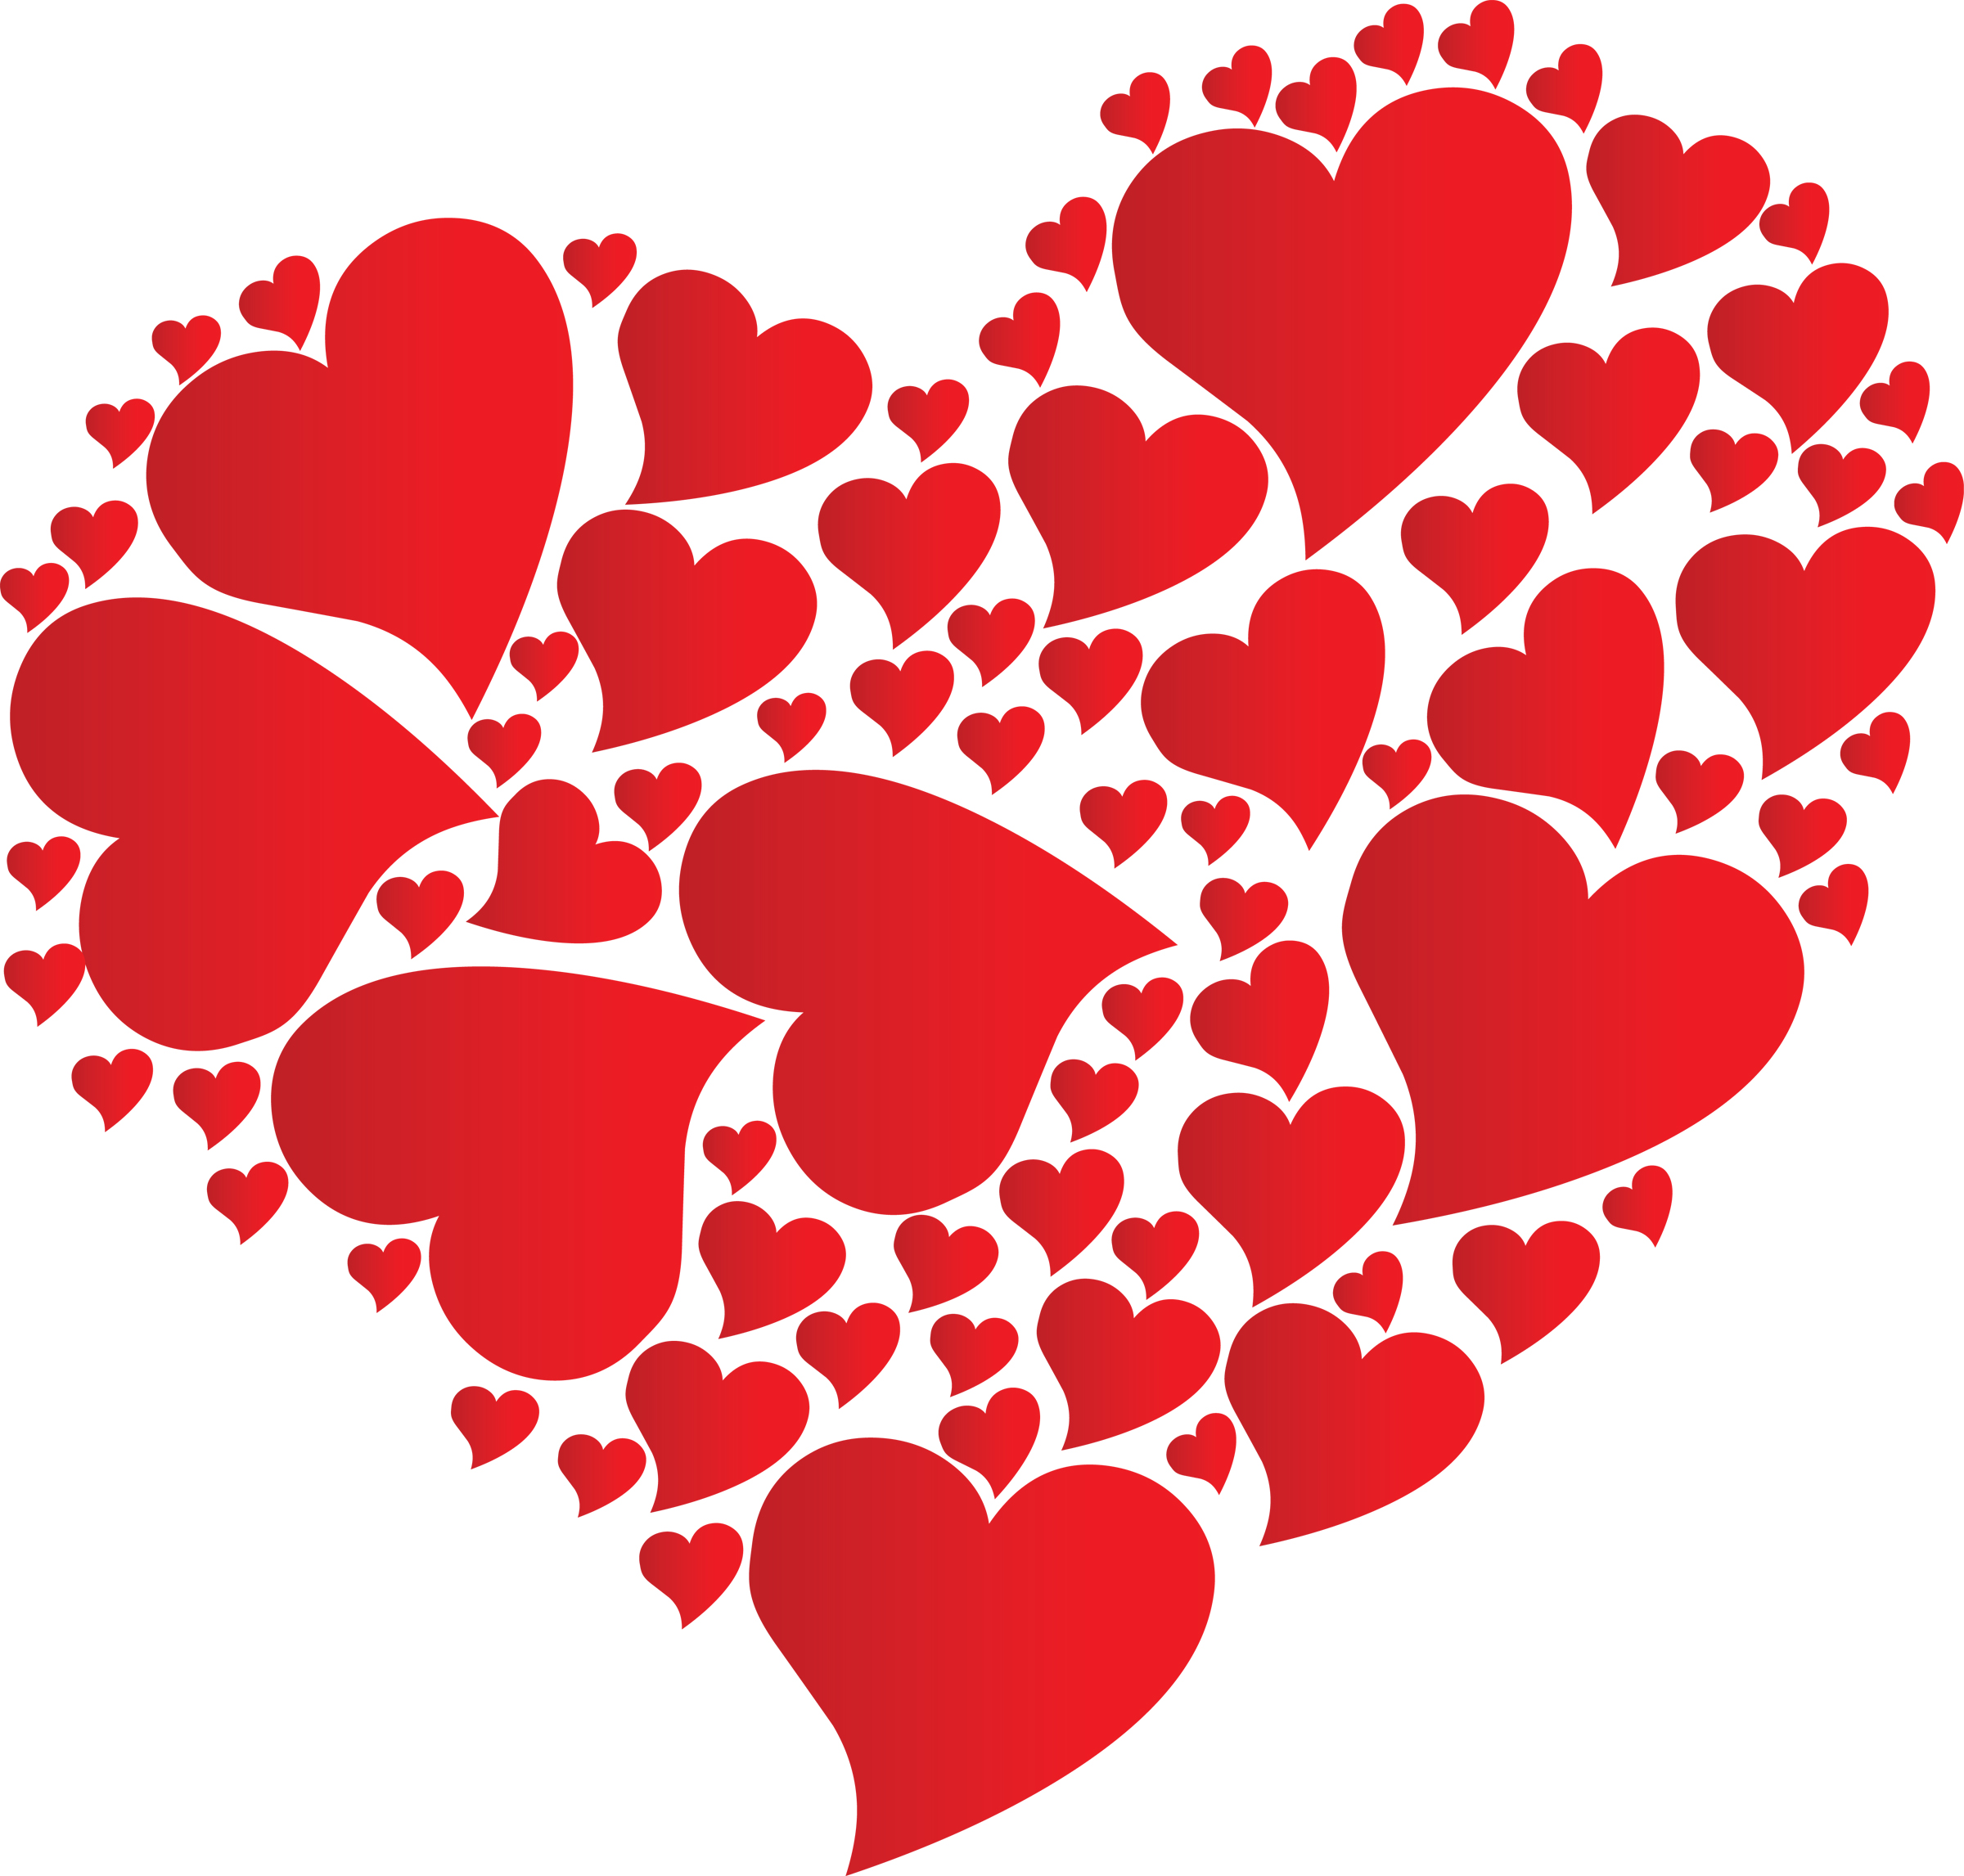 heart-made-of-hearts | 989 XFM